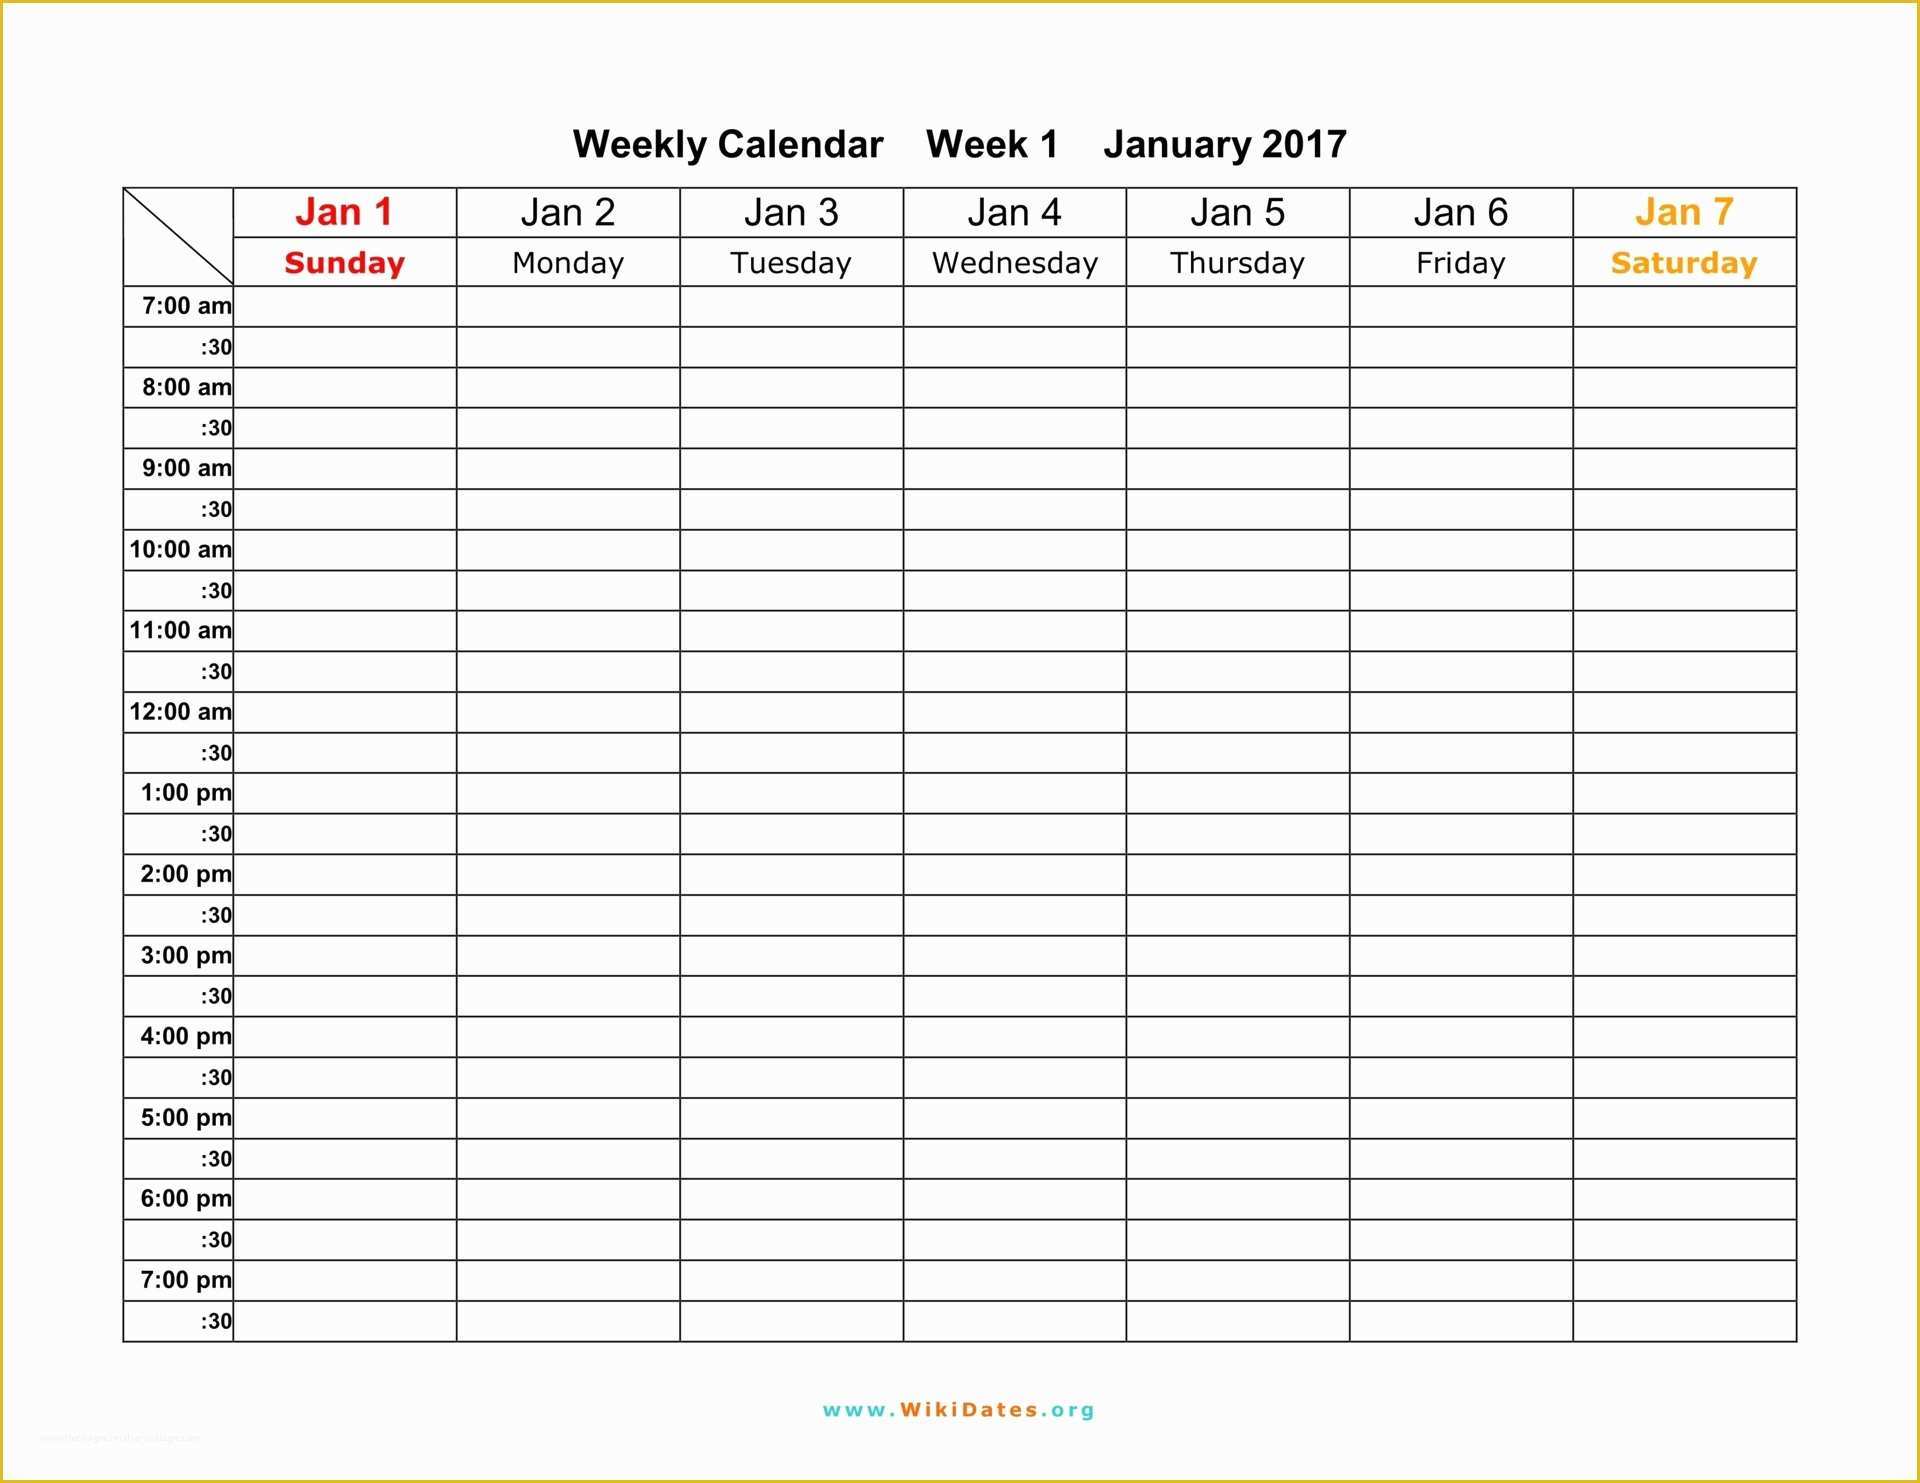 Free Weekly Planner Template Of Weekly Calendar Download Weekly Calendar 2017 and 2018